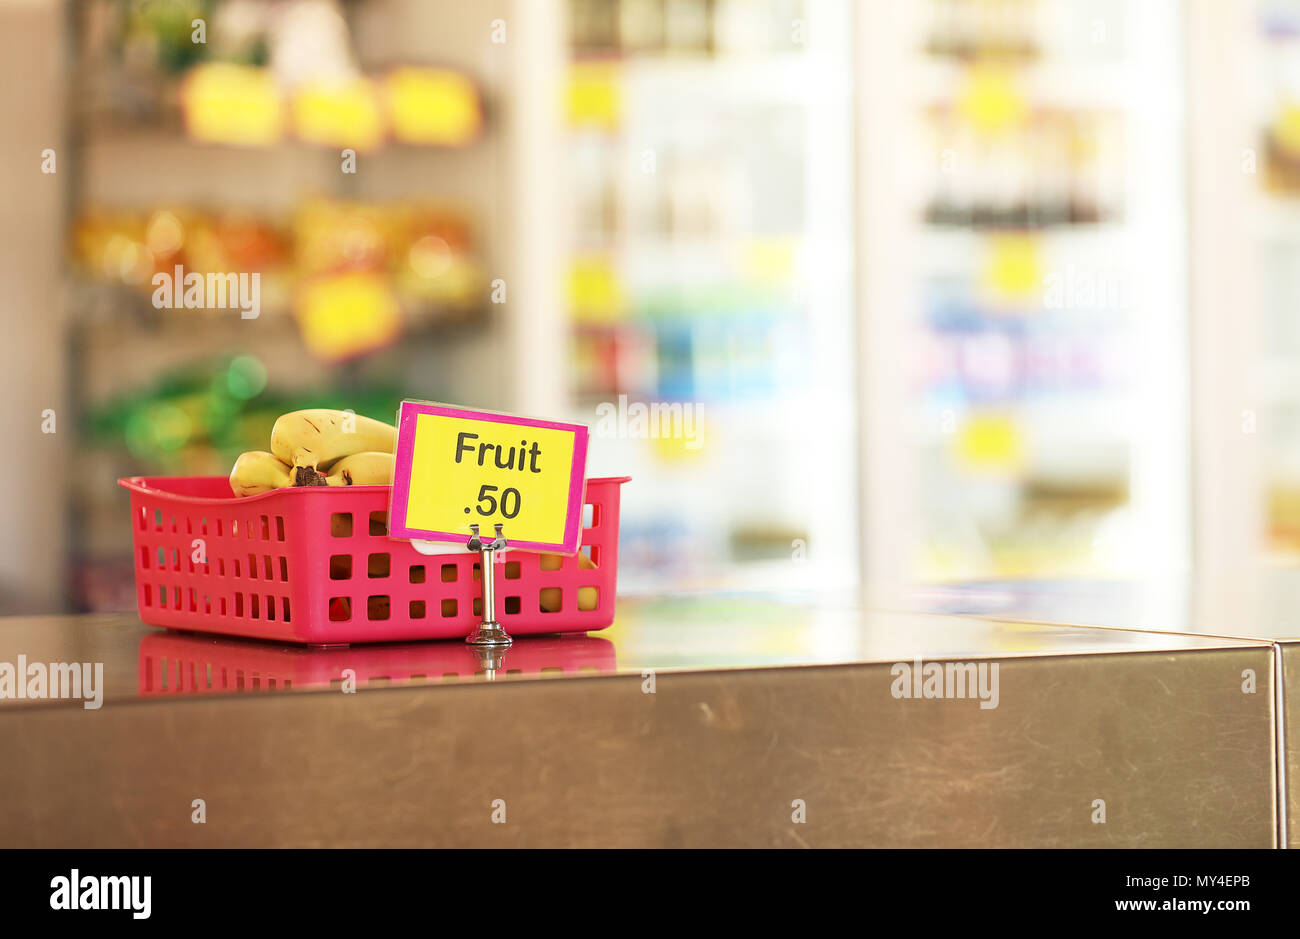 Mensa scolastica negozio di dolciumi caff vendita frutta sani opzioni di cibo per gli studenti. banane in un rosso sul vassoio in acciaio inox panca in primo piano Foto Stock